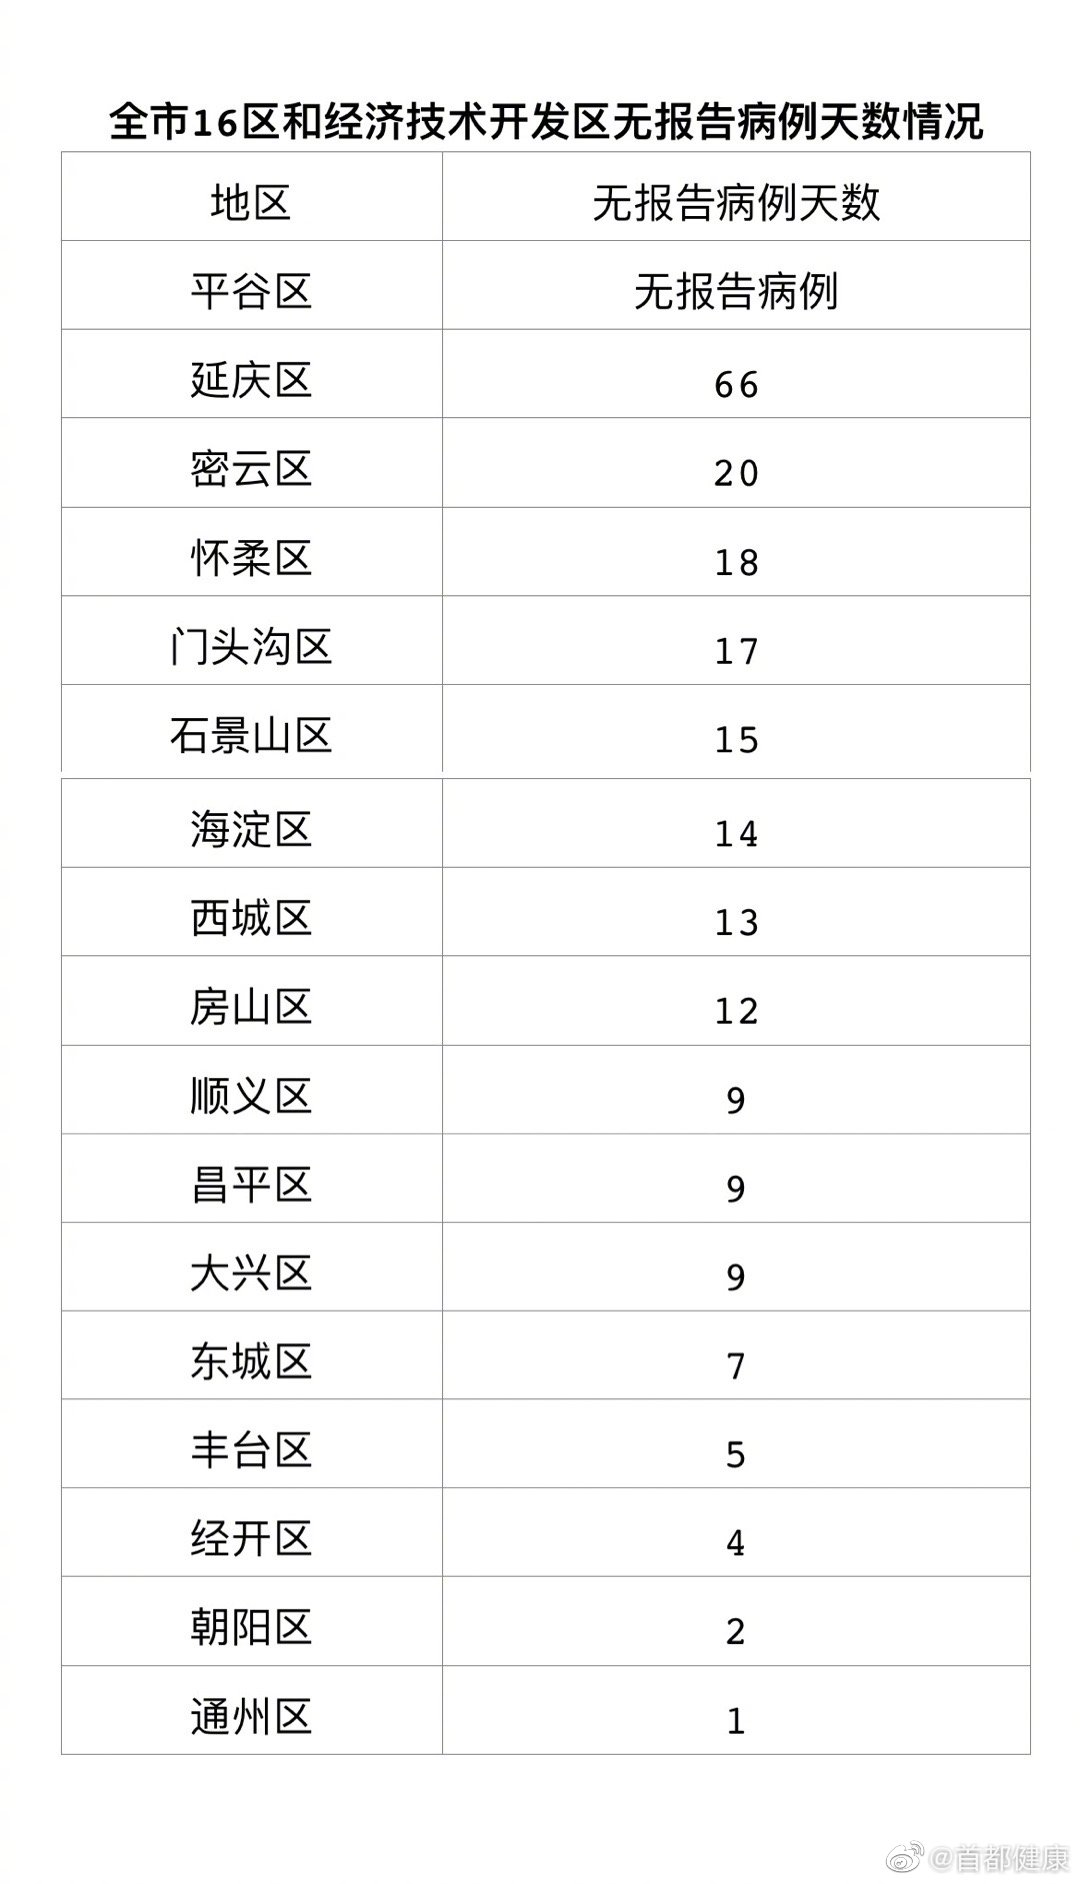 6月30日北京无新增新冠肺炎确诊病例 治愈出院6例